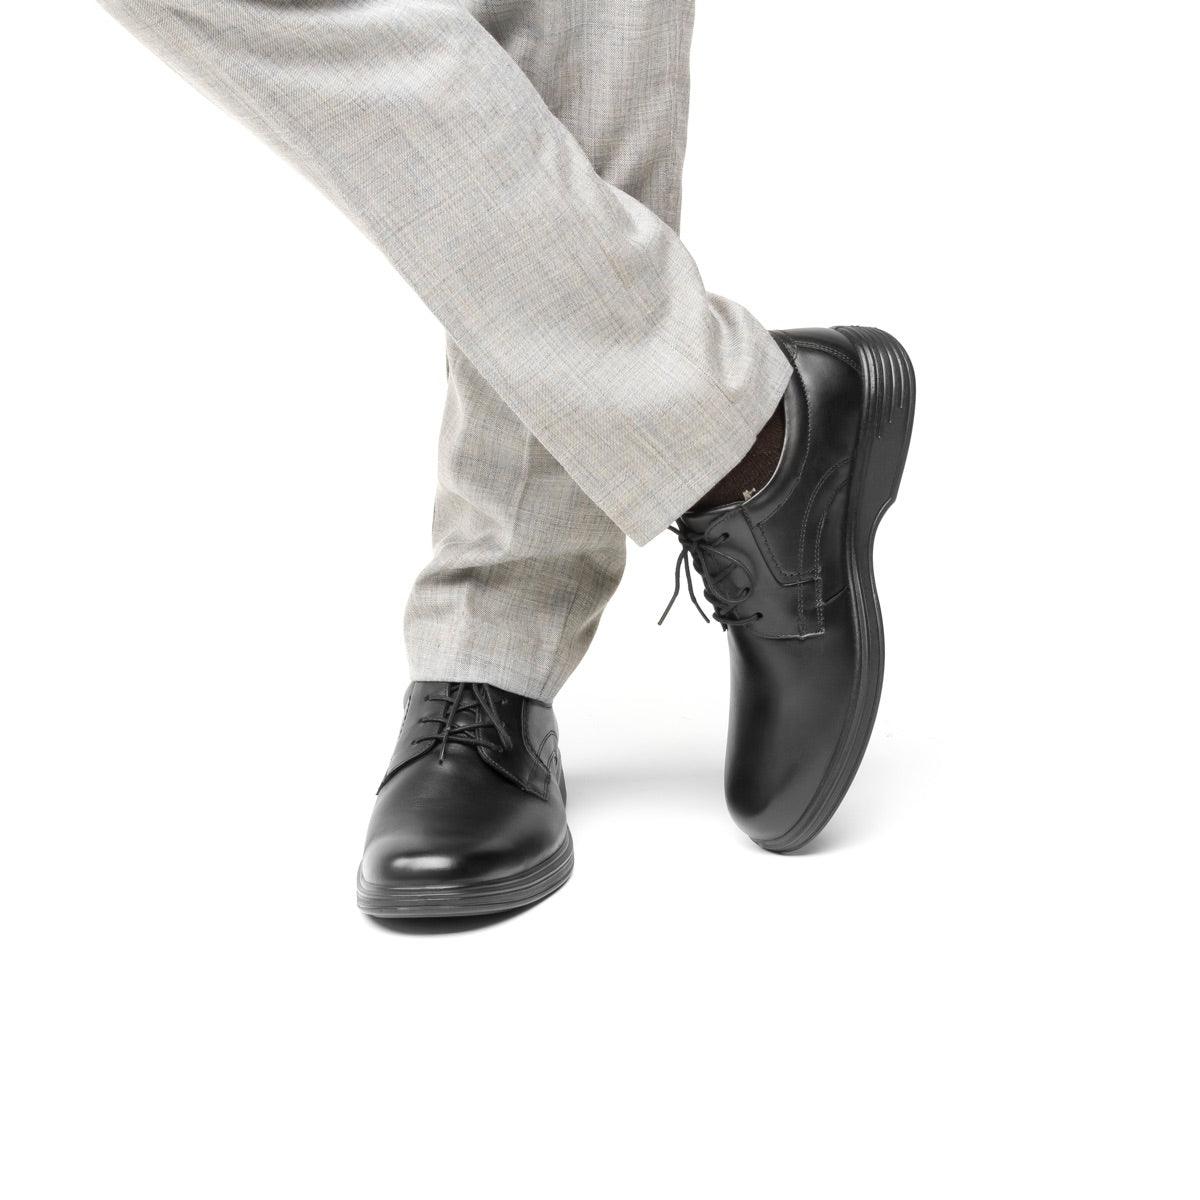 Calzado Hombre Caballero Zapato Casual Flexi En Piel Negro